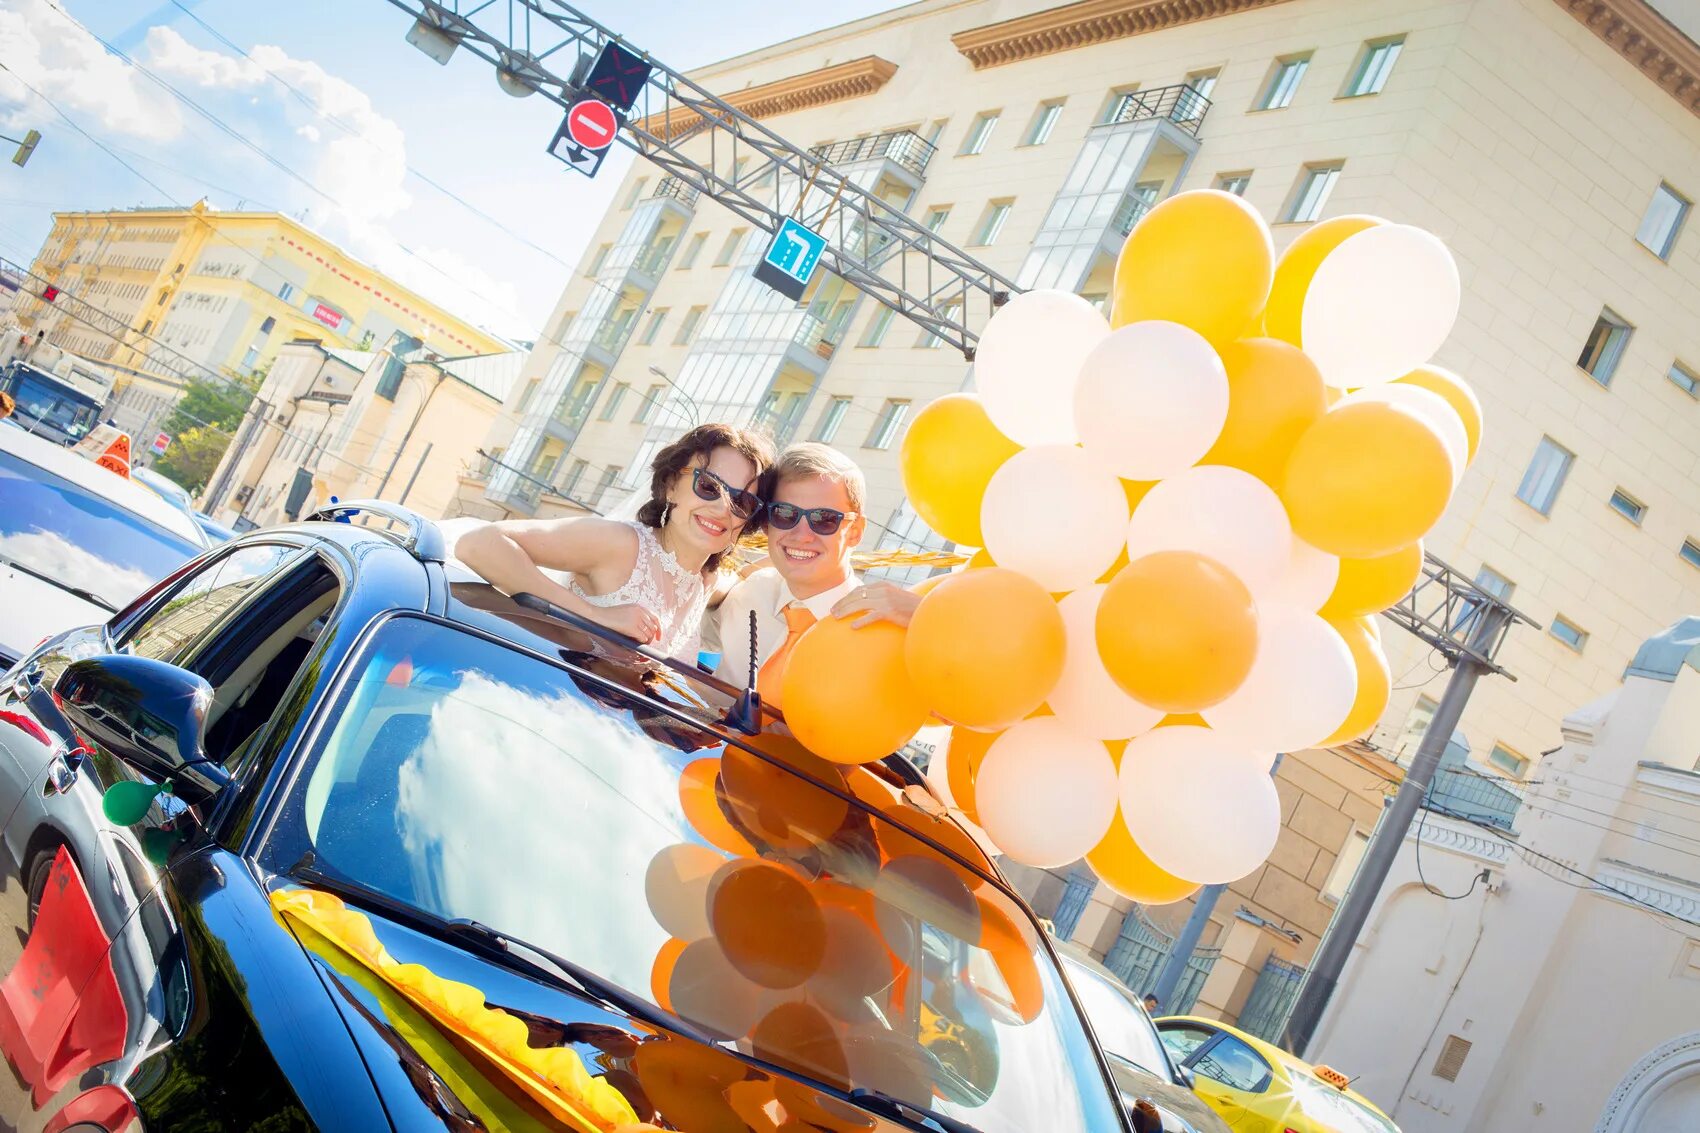 Шариков доставка шаров. Гелиевые шары реклама на авто. Фотосессия шары и машина. Доставщик шаров. Гелиевые шары с людьми.